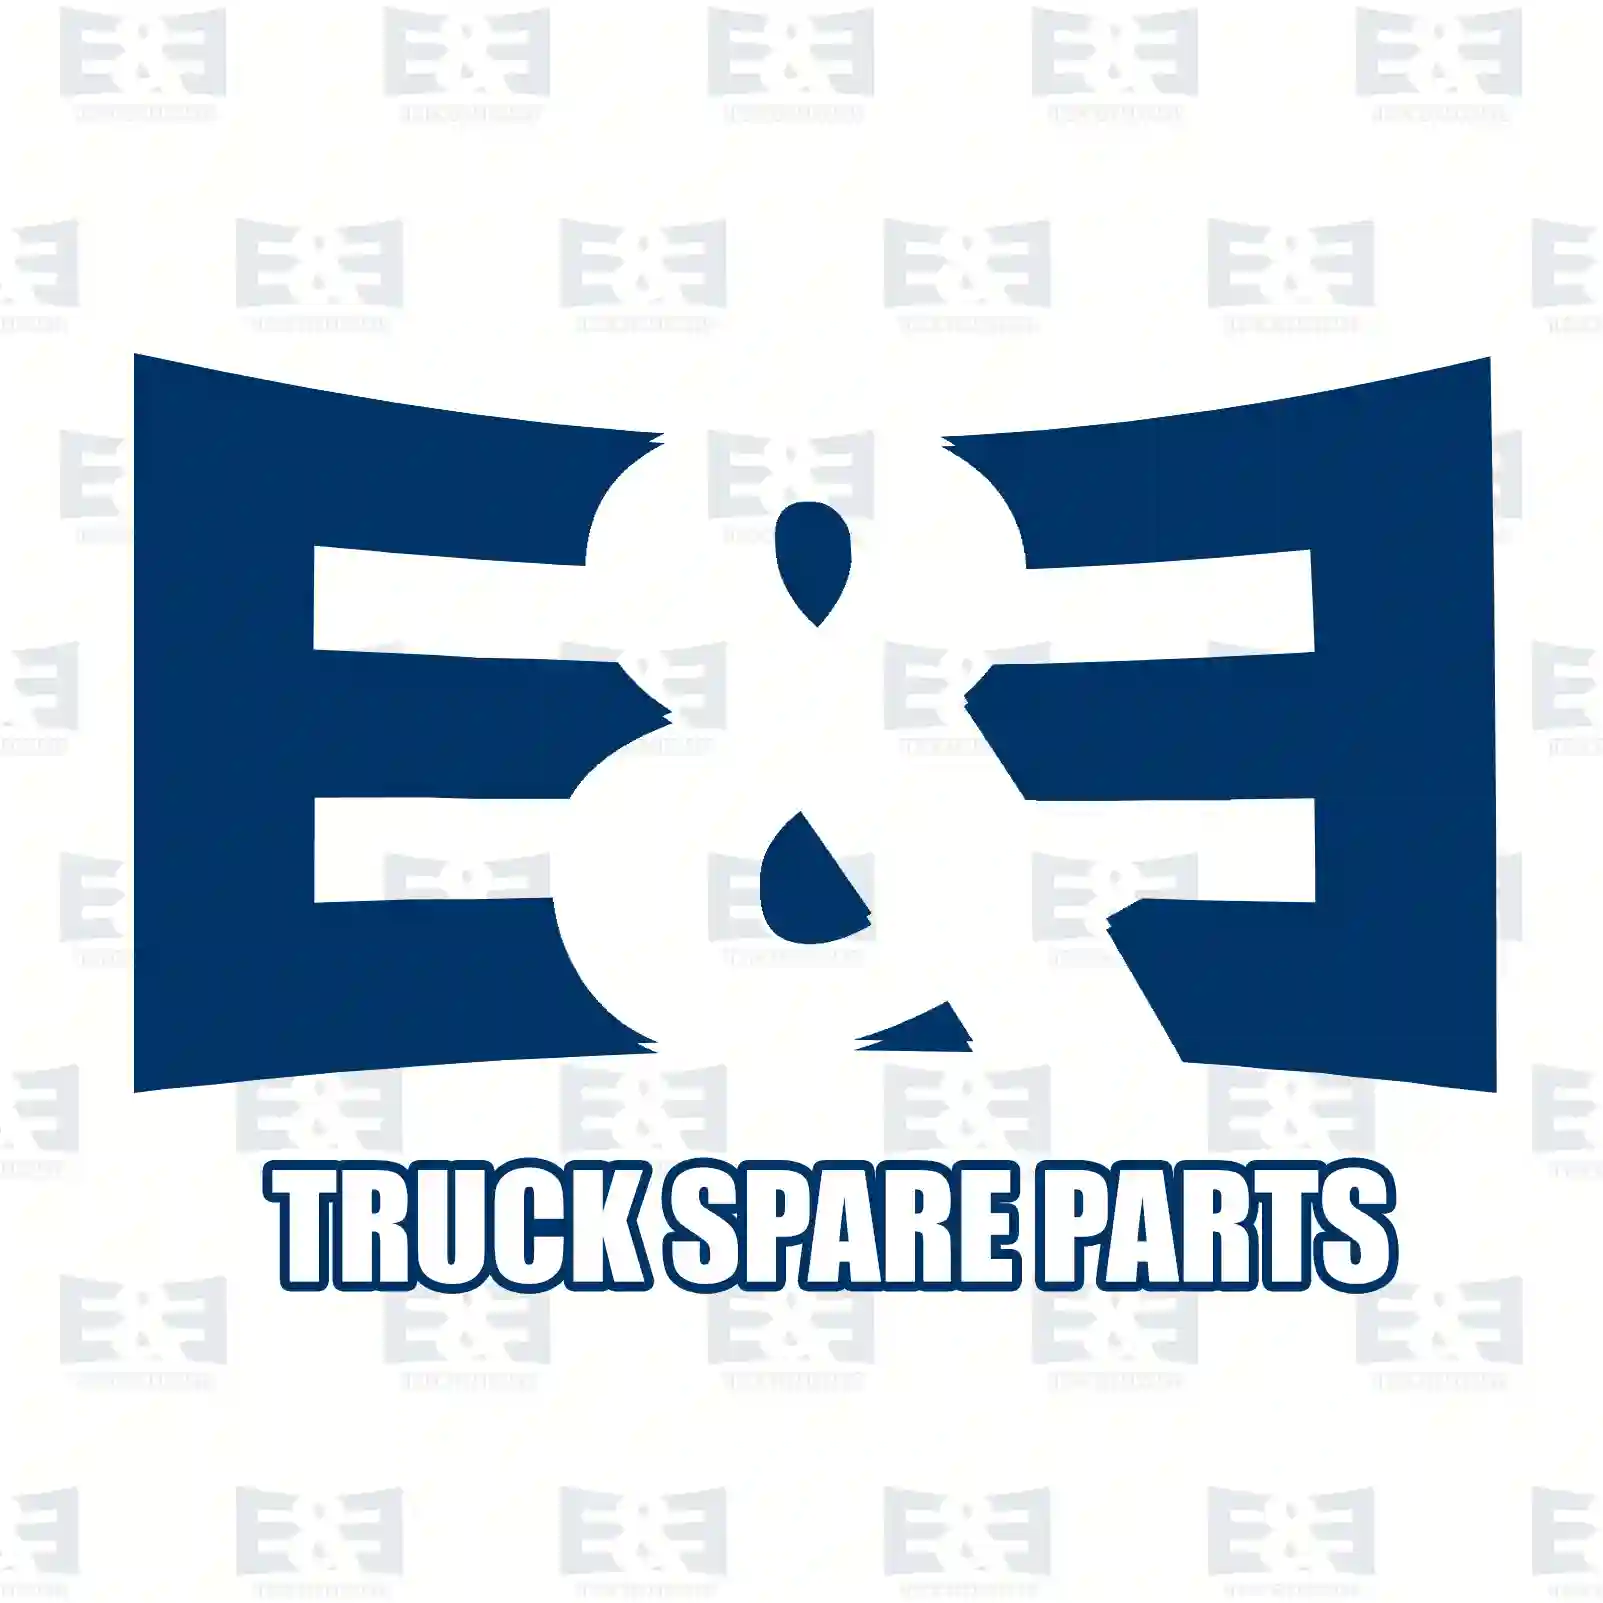 Control cable, Switching, 2E2277684, 7420844622 ||  2E2277684 E&E Truck Spare Parts | Truck Spare Parts, Auotomotive Spare Parts Control cable, Switching, 2E2277684, 7420844622 ||  2E2277684 E&E Truck Spare Parts | Truck Spare Parts, Auotomotive Spare Parts